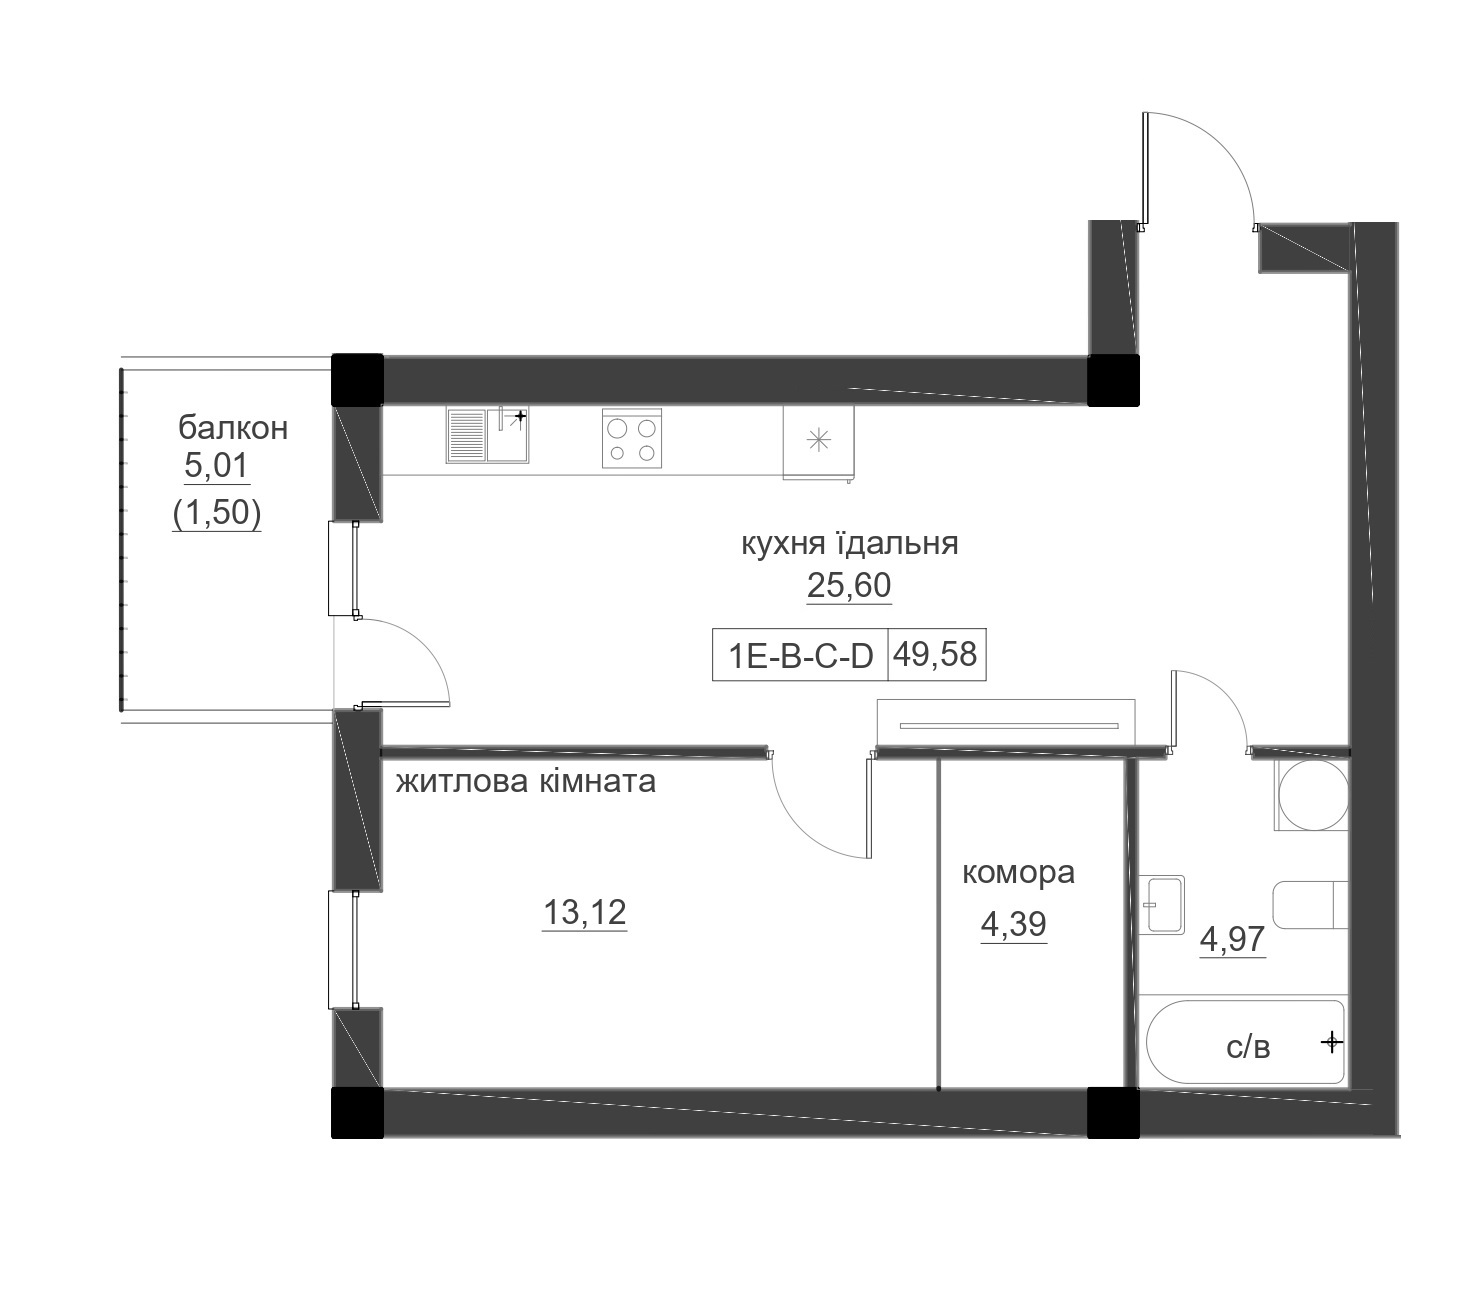 Планировка 1-к квартира площей 49.58м2, LR-005-06/0005.